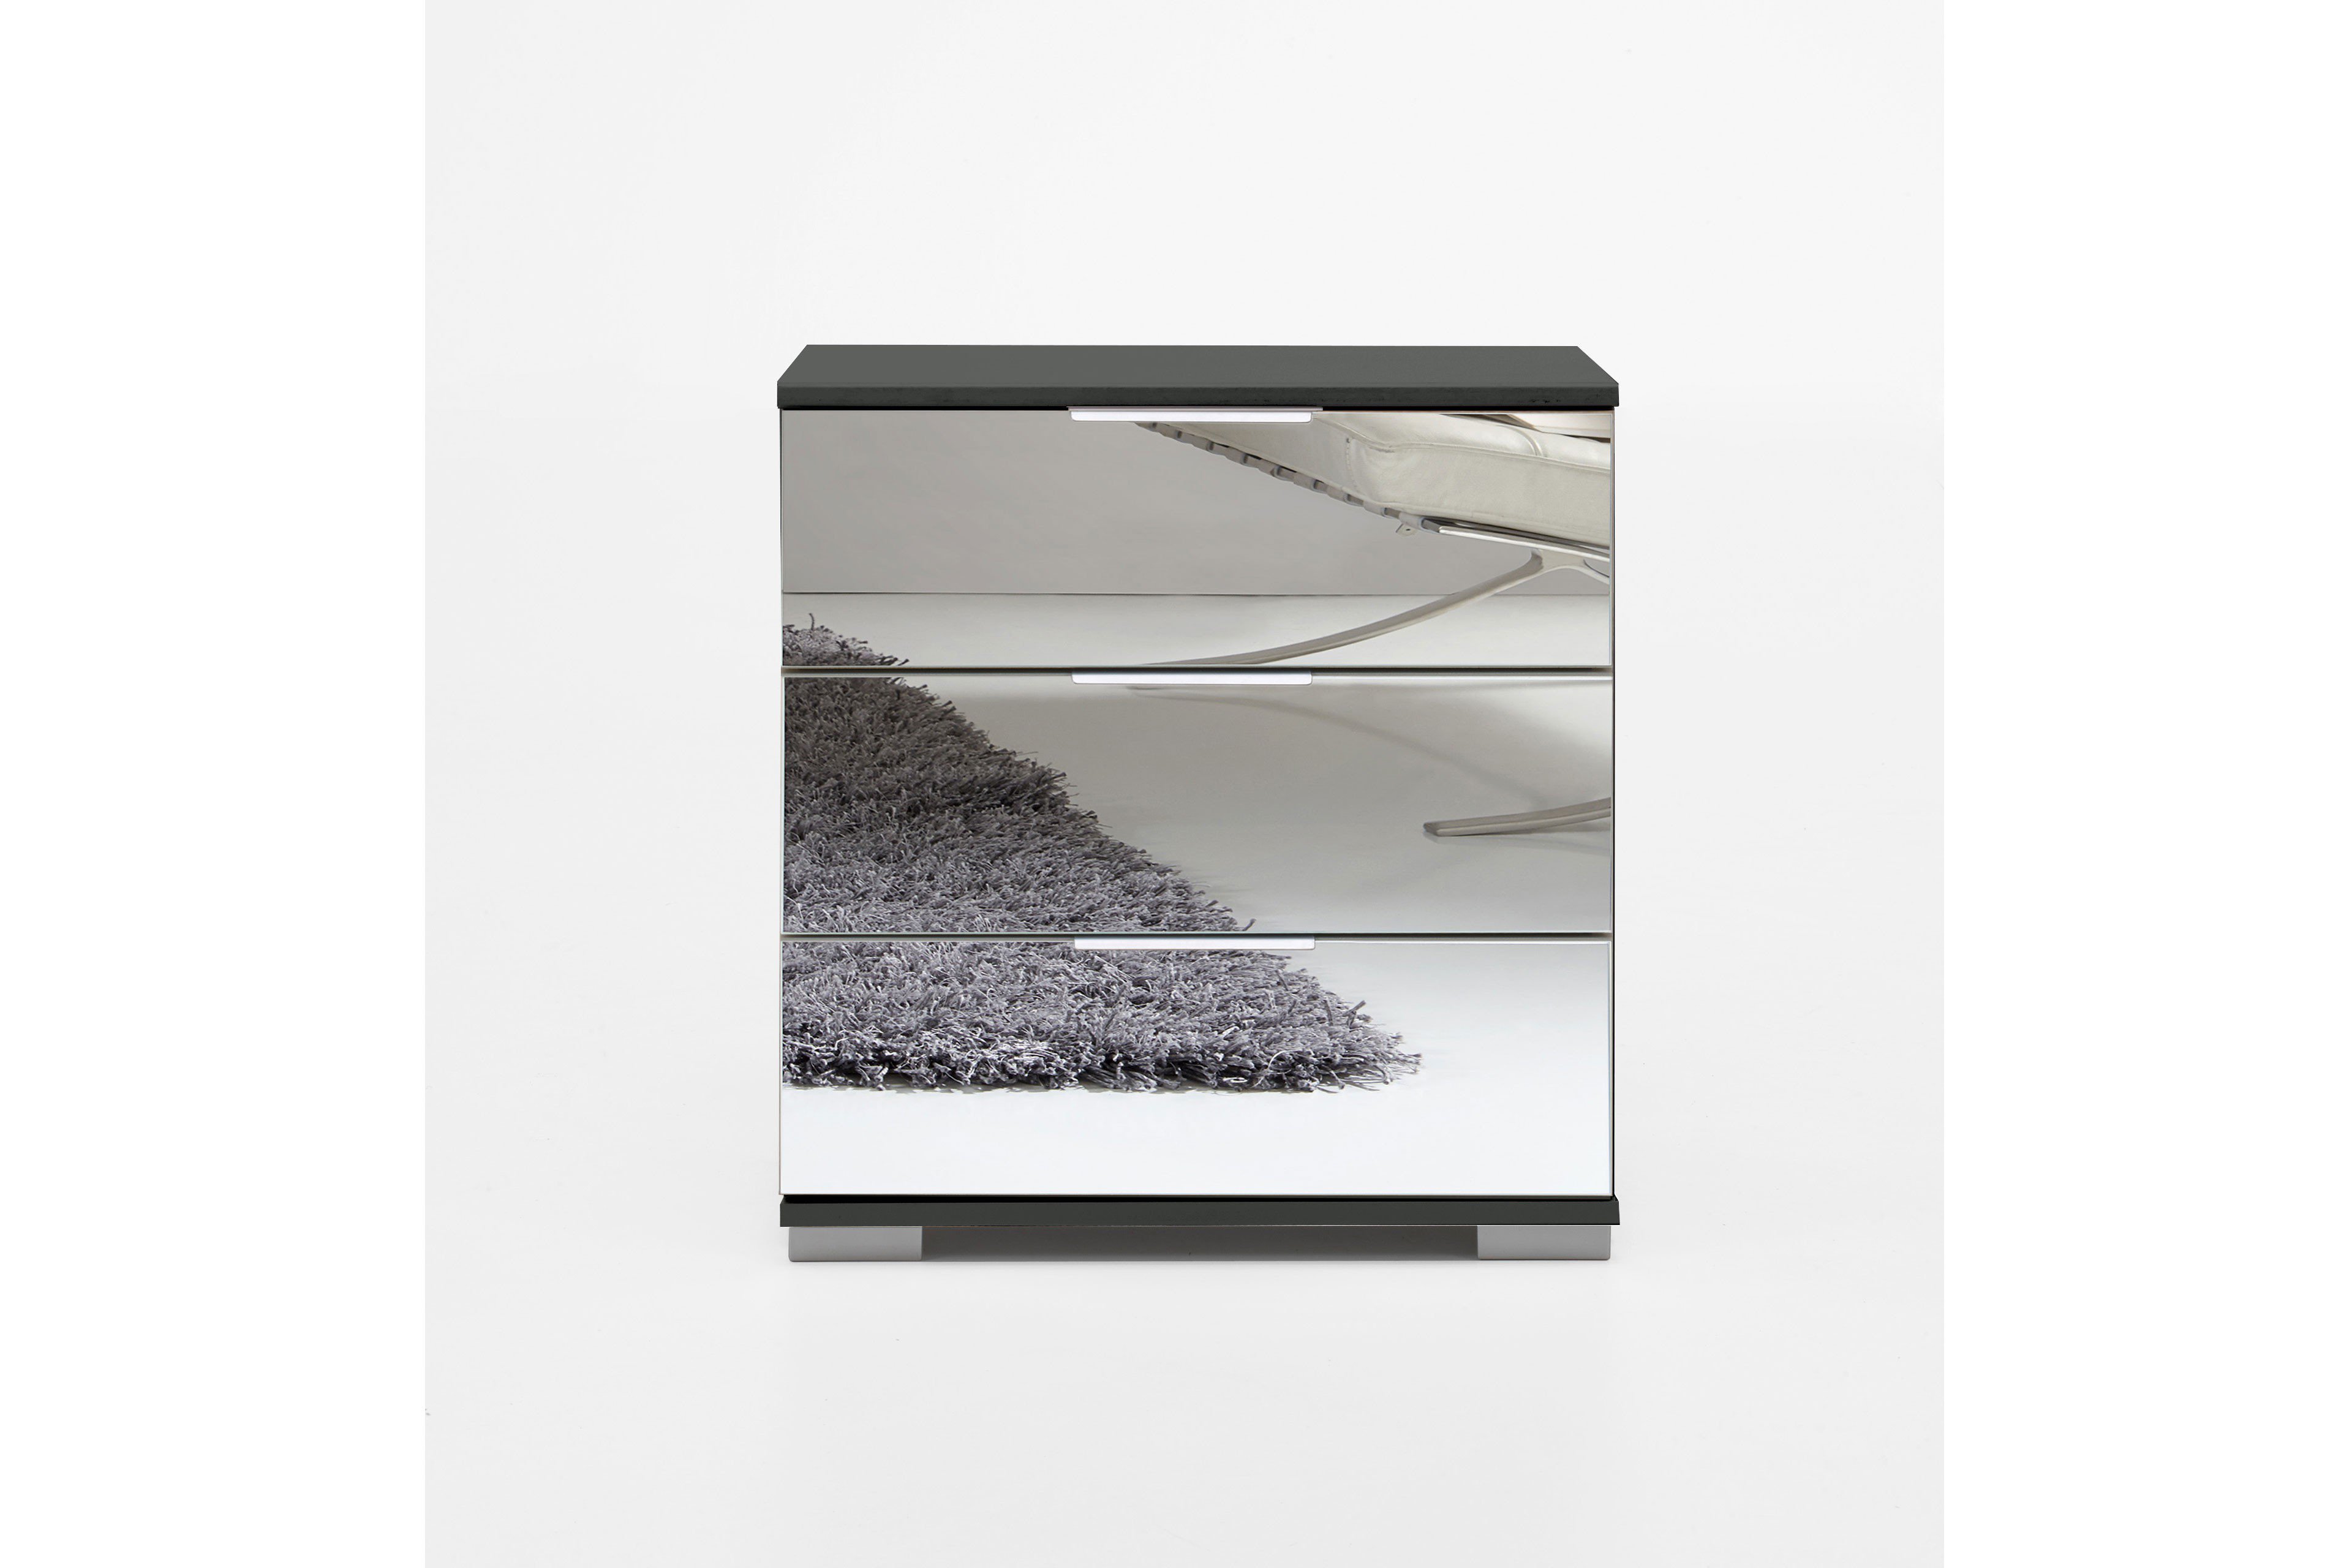 Wimex Nachttisch Easy Plus Front mit Spiegelabsetzung | Möbel Letz - Ihr  Online-Shop